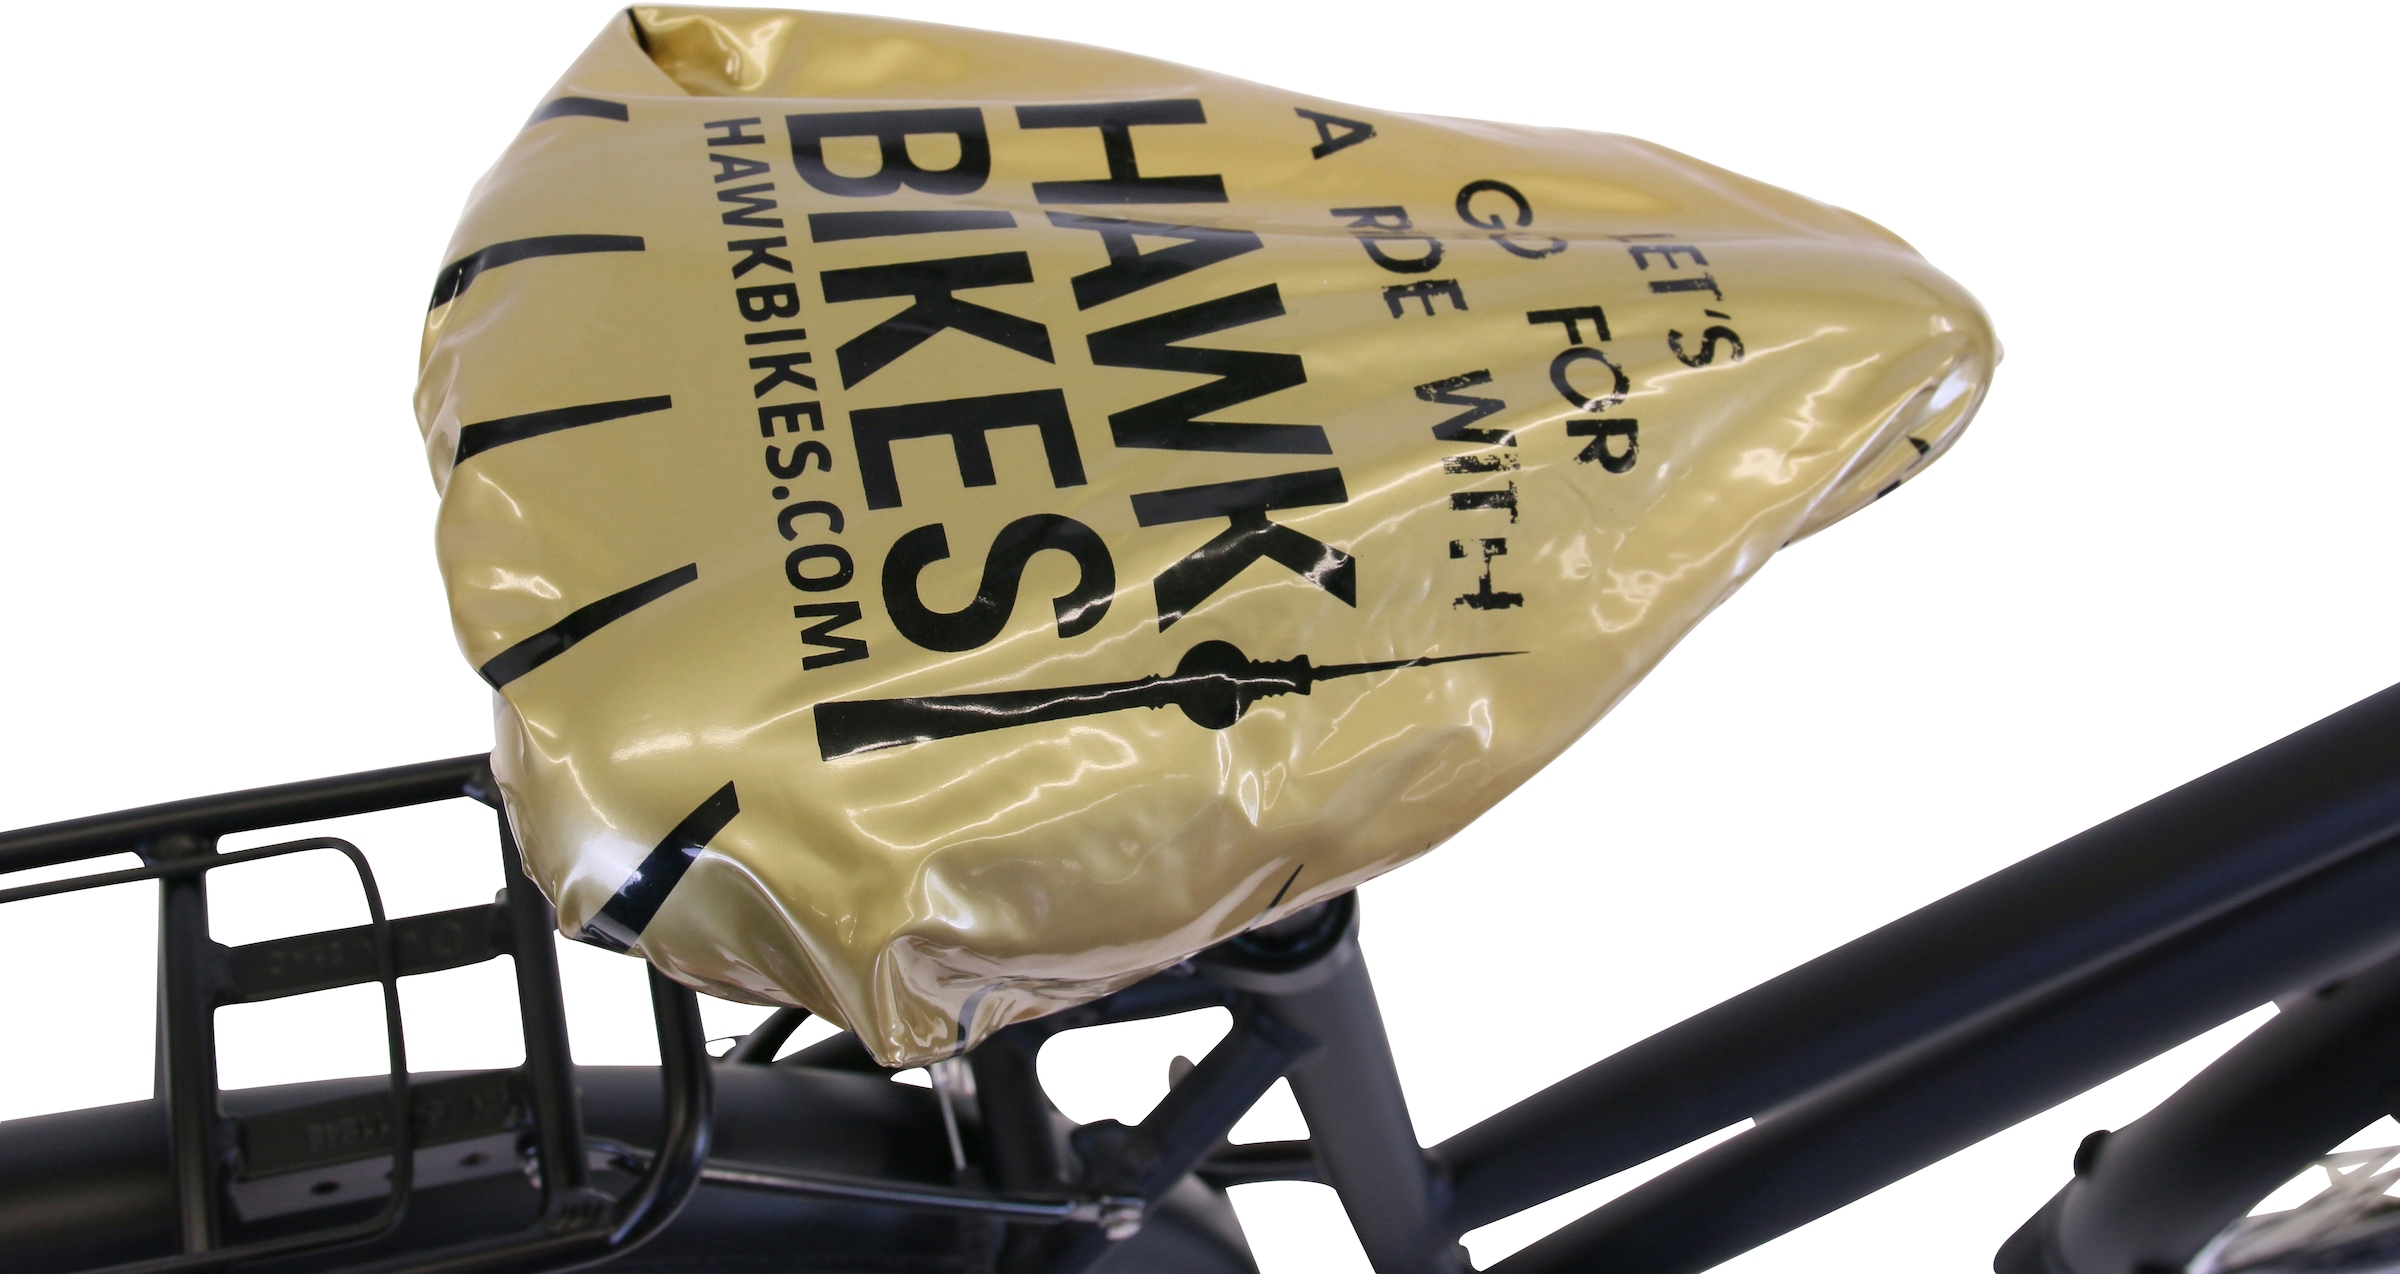 HAWK Bikes Trekkingrad »HAWK Trekking Lady Premium Plus Black«, 24 Gang, microSHIFT, für Damen und Herren